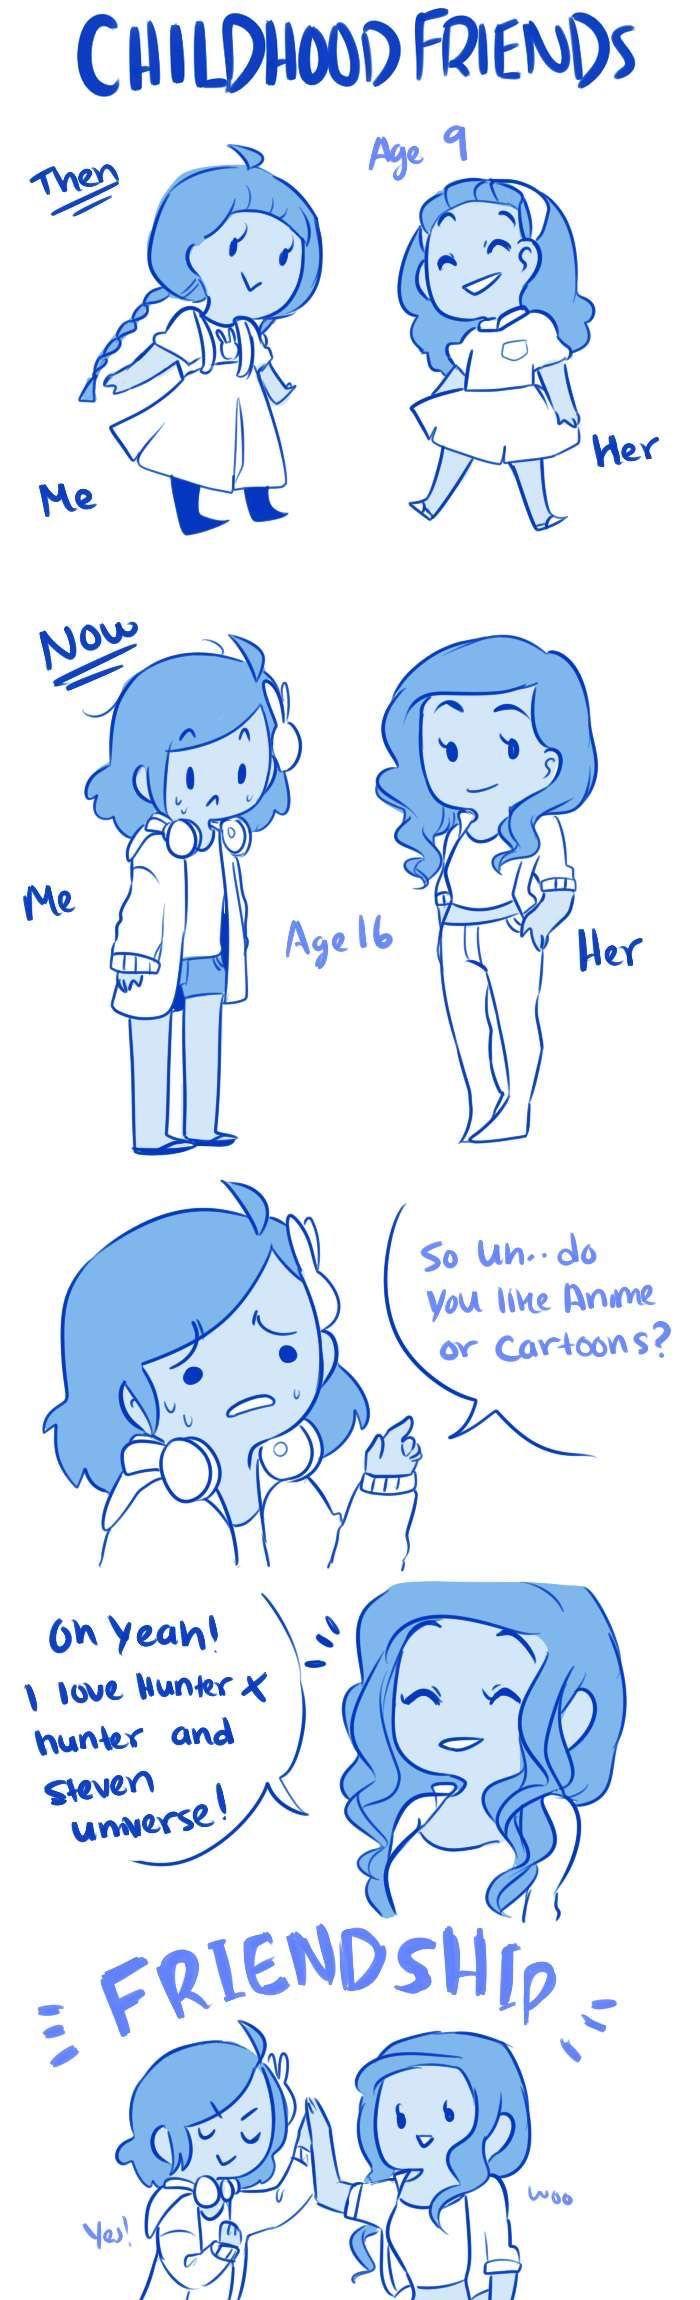 Me vs Her Friendship Comic